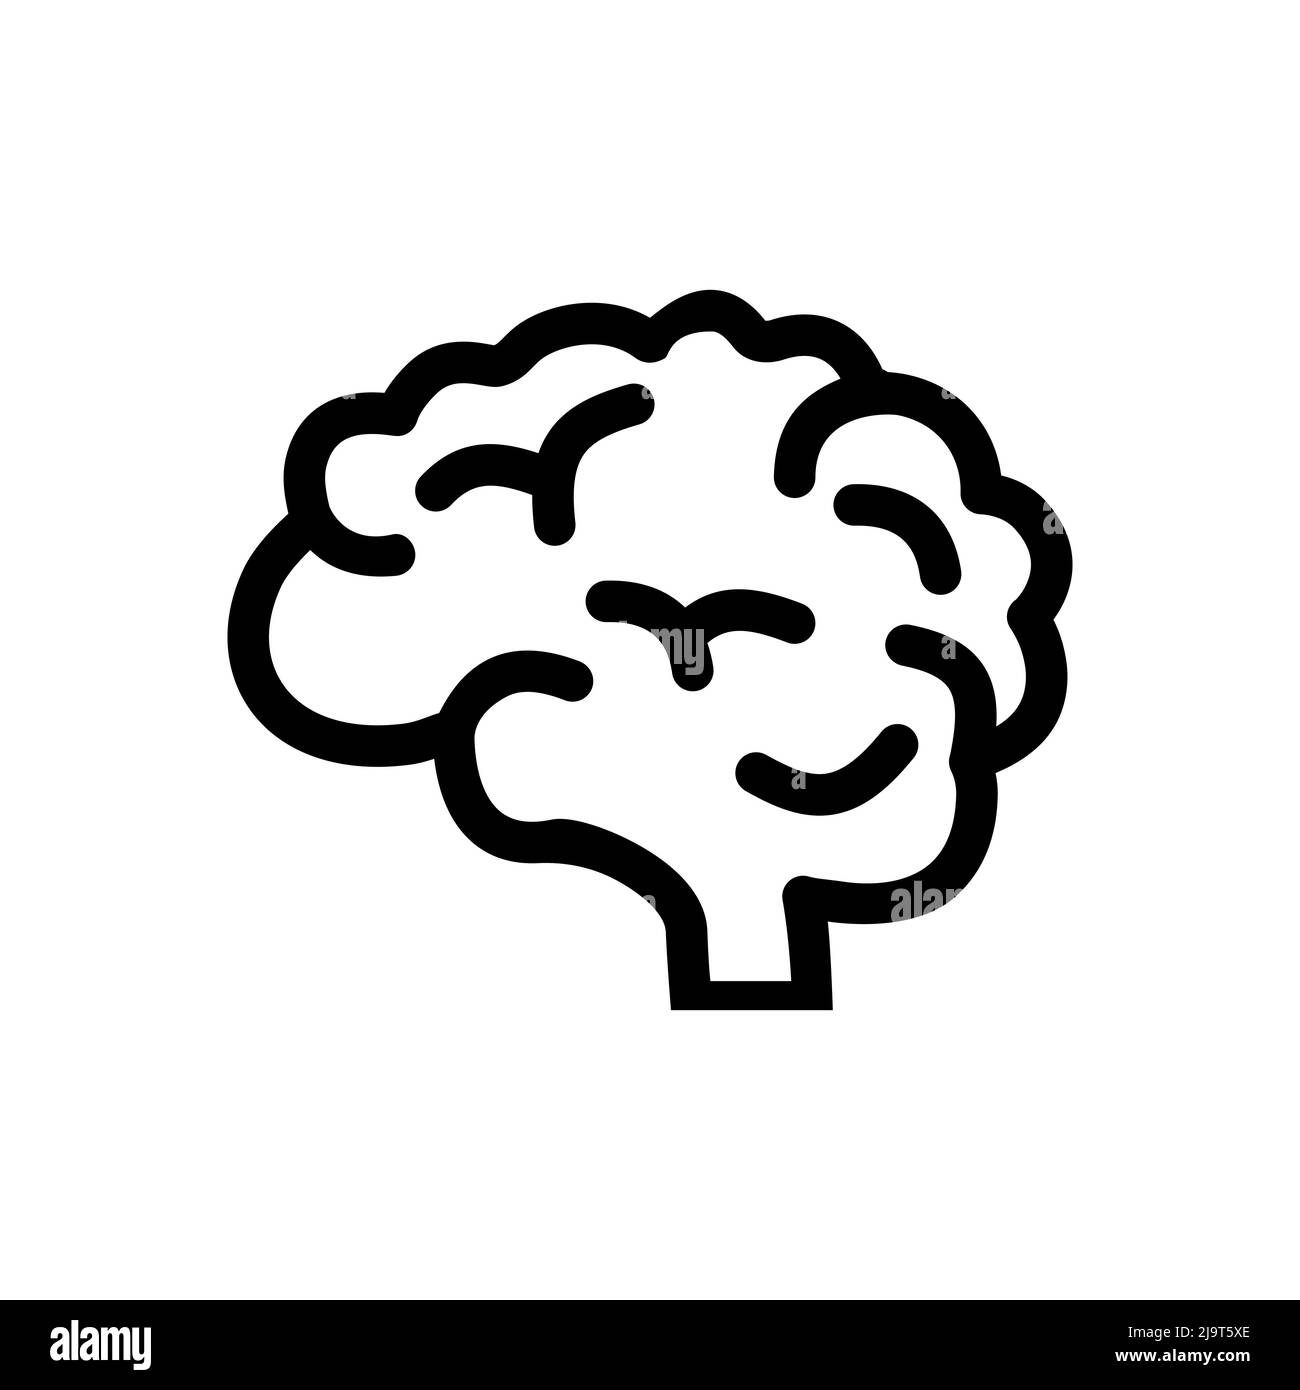 Farbe der Schablone für Gehirnsymbole kann bearbeitet werden. Symbol-Vektor-Zeichen des Gehirns auf weißem Hintergrund isoliert. Einfache Vektordarstellung des menschlichen Körperteils. Stock Vektor